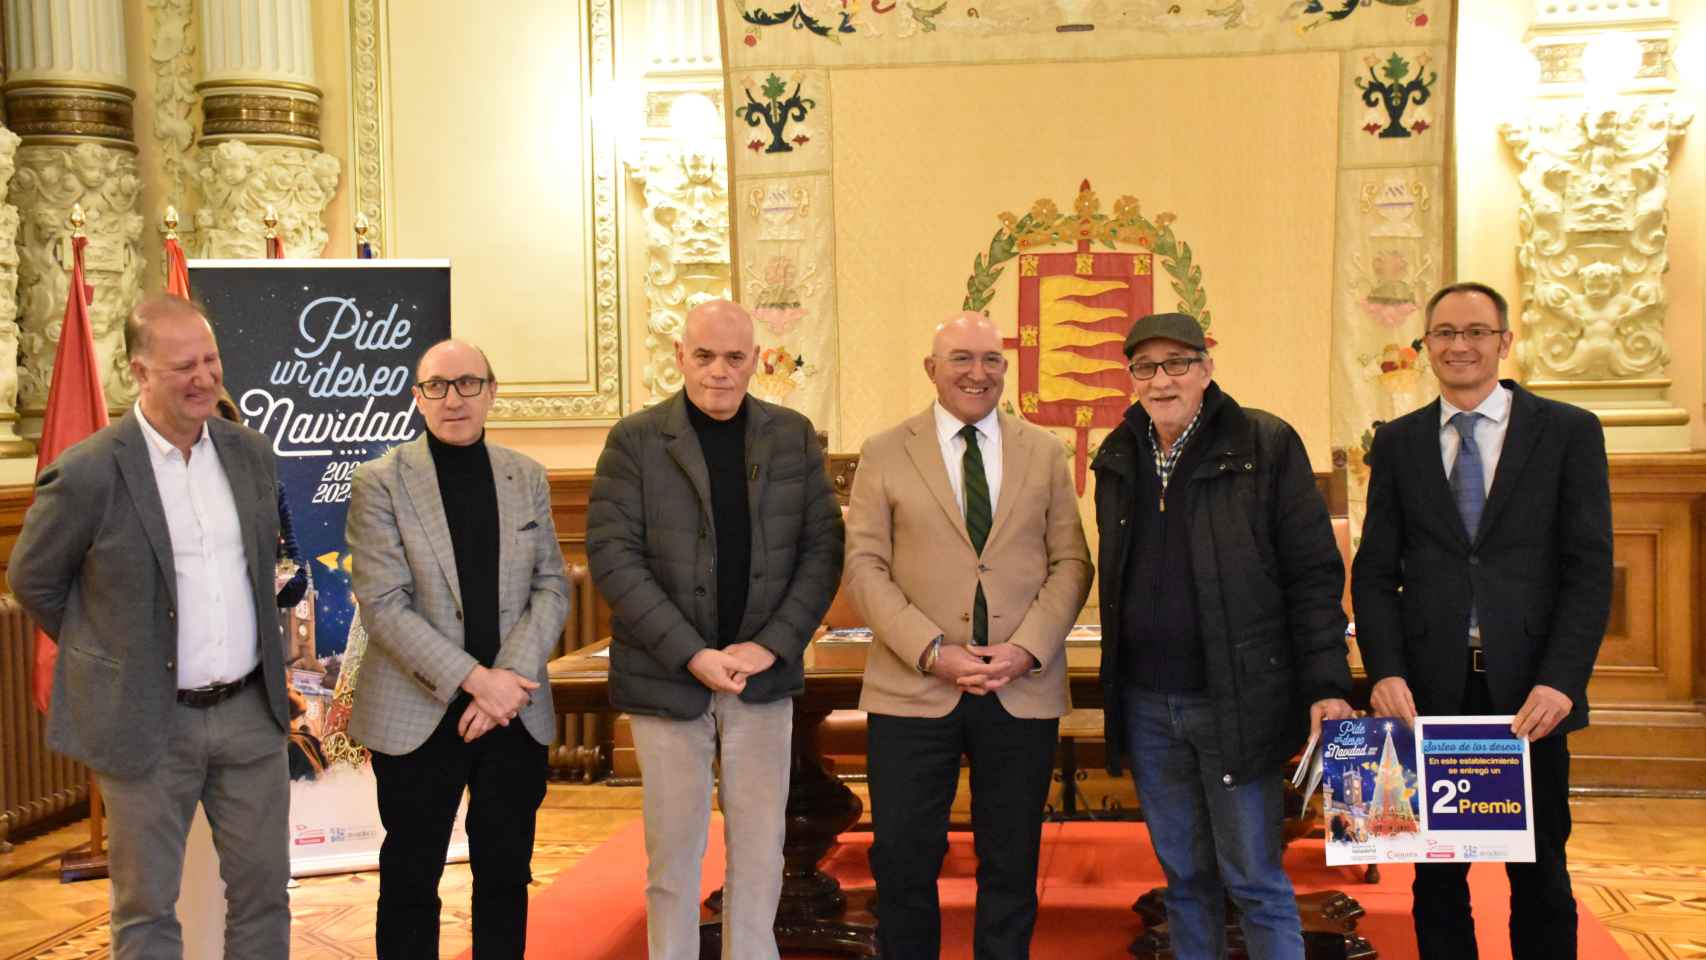 40 vallisoletanos han sido agraciados con el segundo premio del Sorteo del Árbol de los Deseos de Valladolid